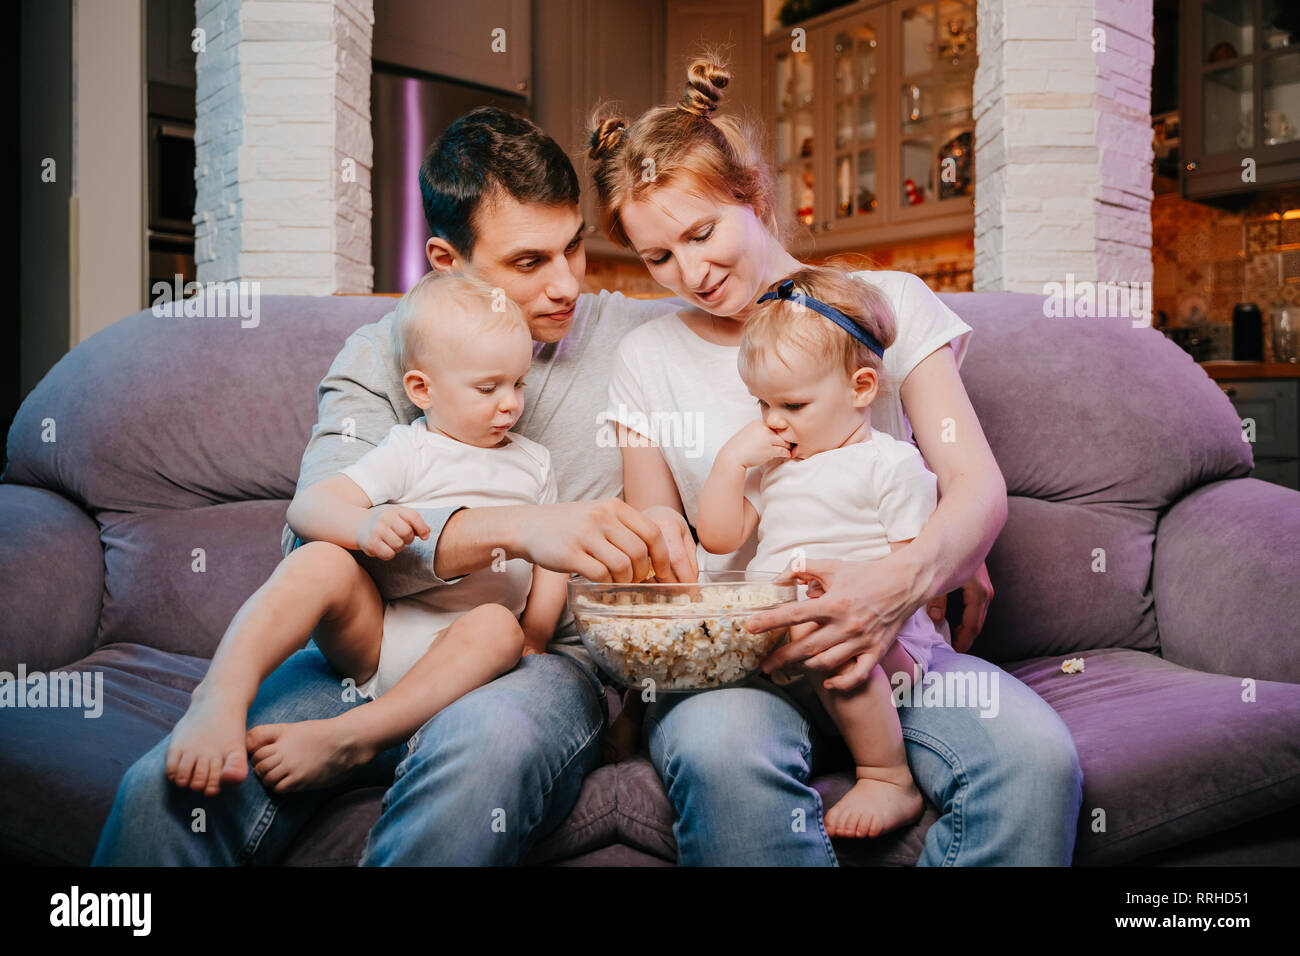 Familia joven con niños comiendo palomitas en el sofá Fotografía de stock -  Alamy